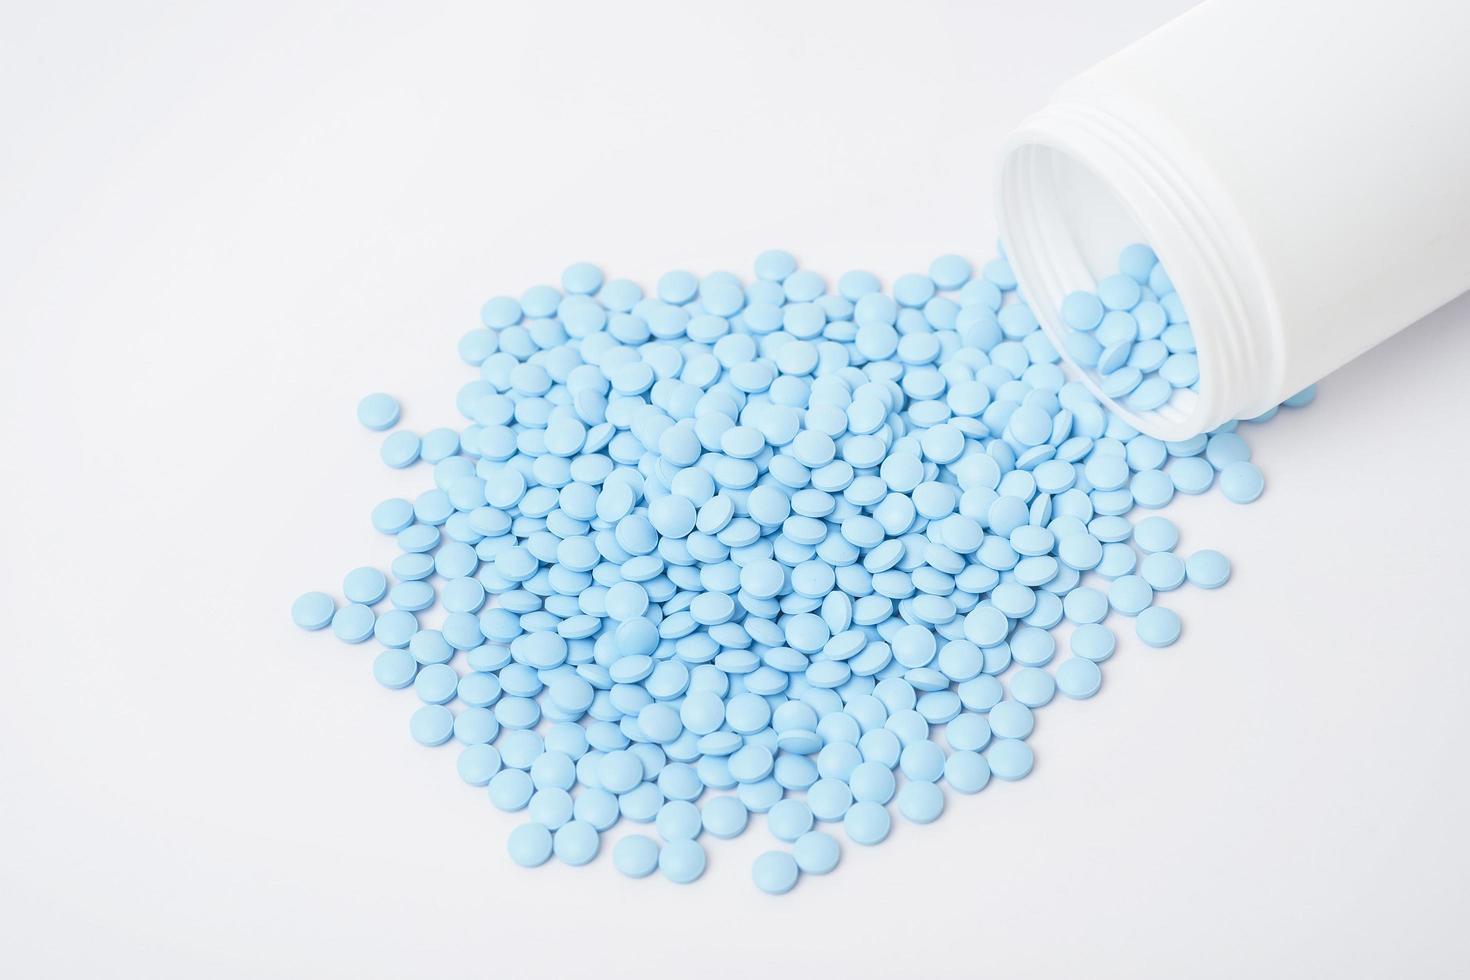 montes de pílulas azuis sobre fundo branco foto